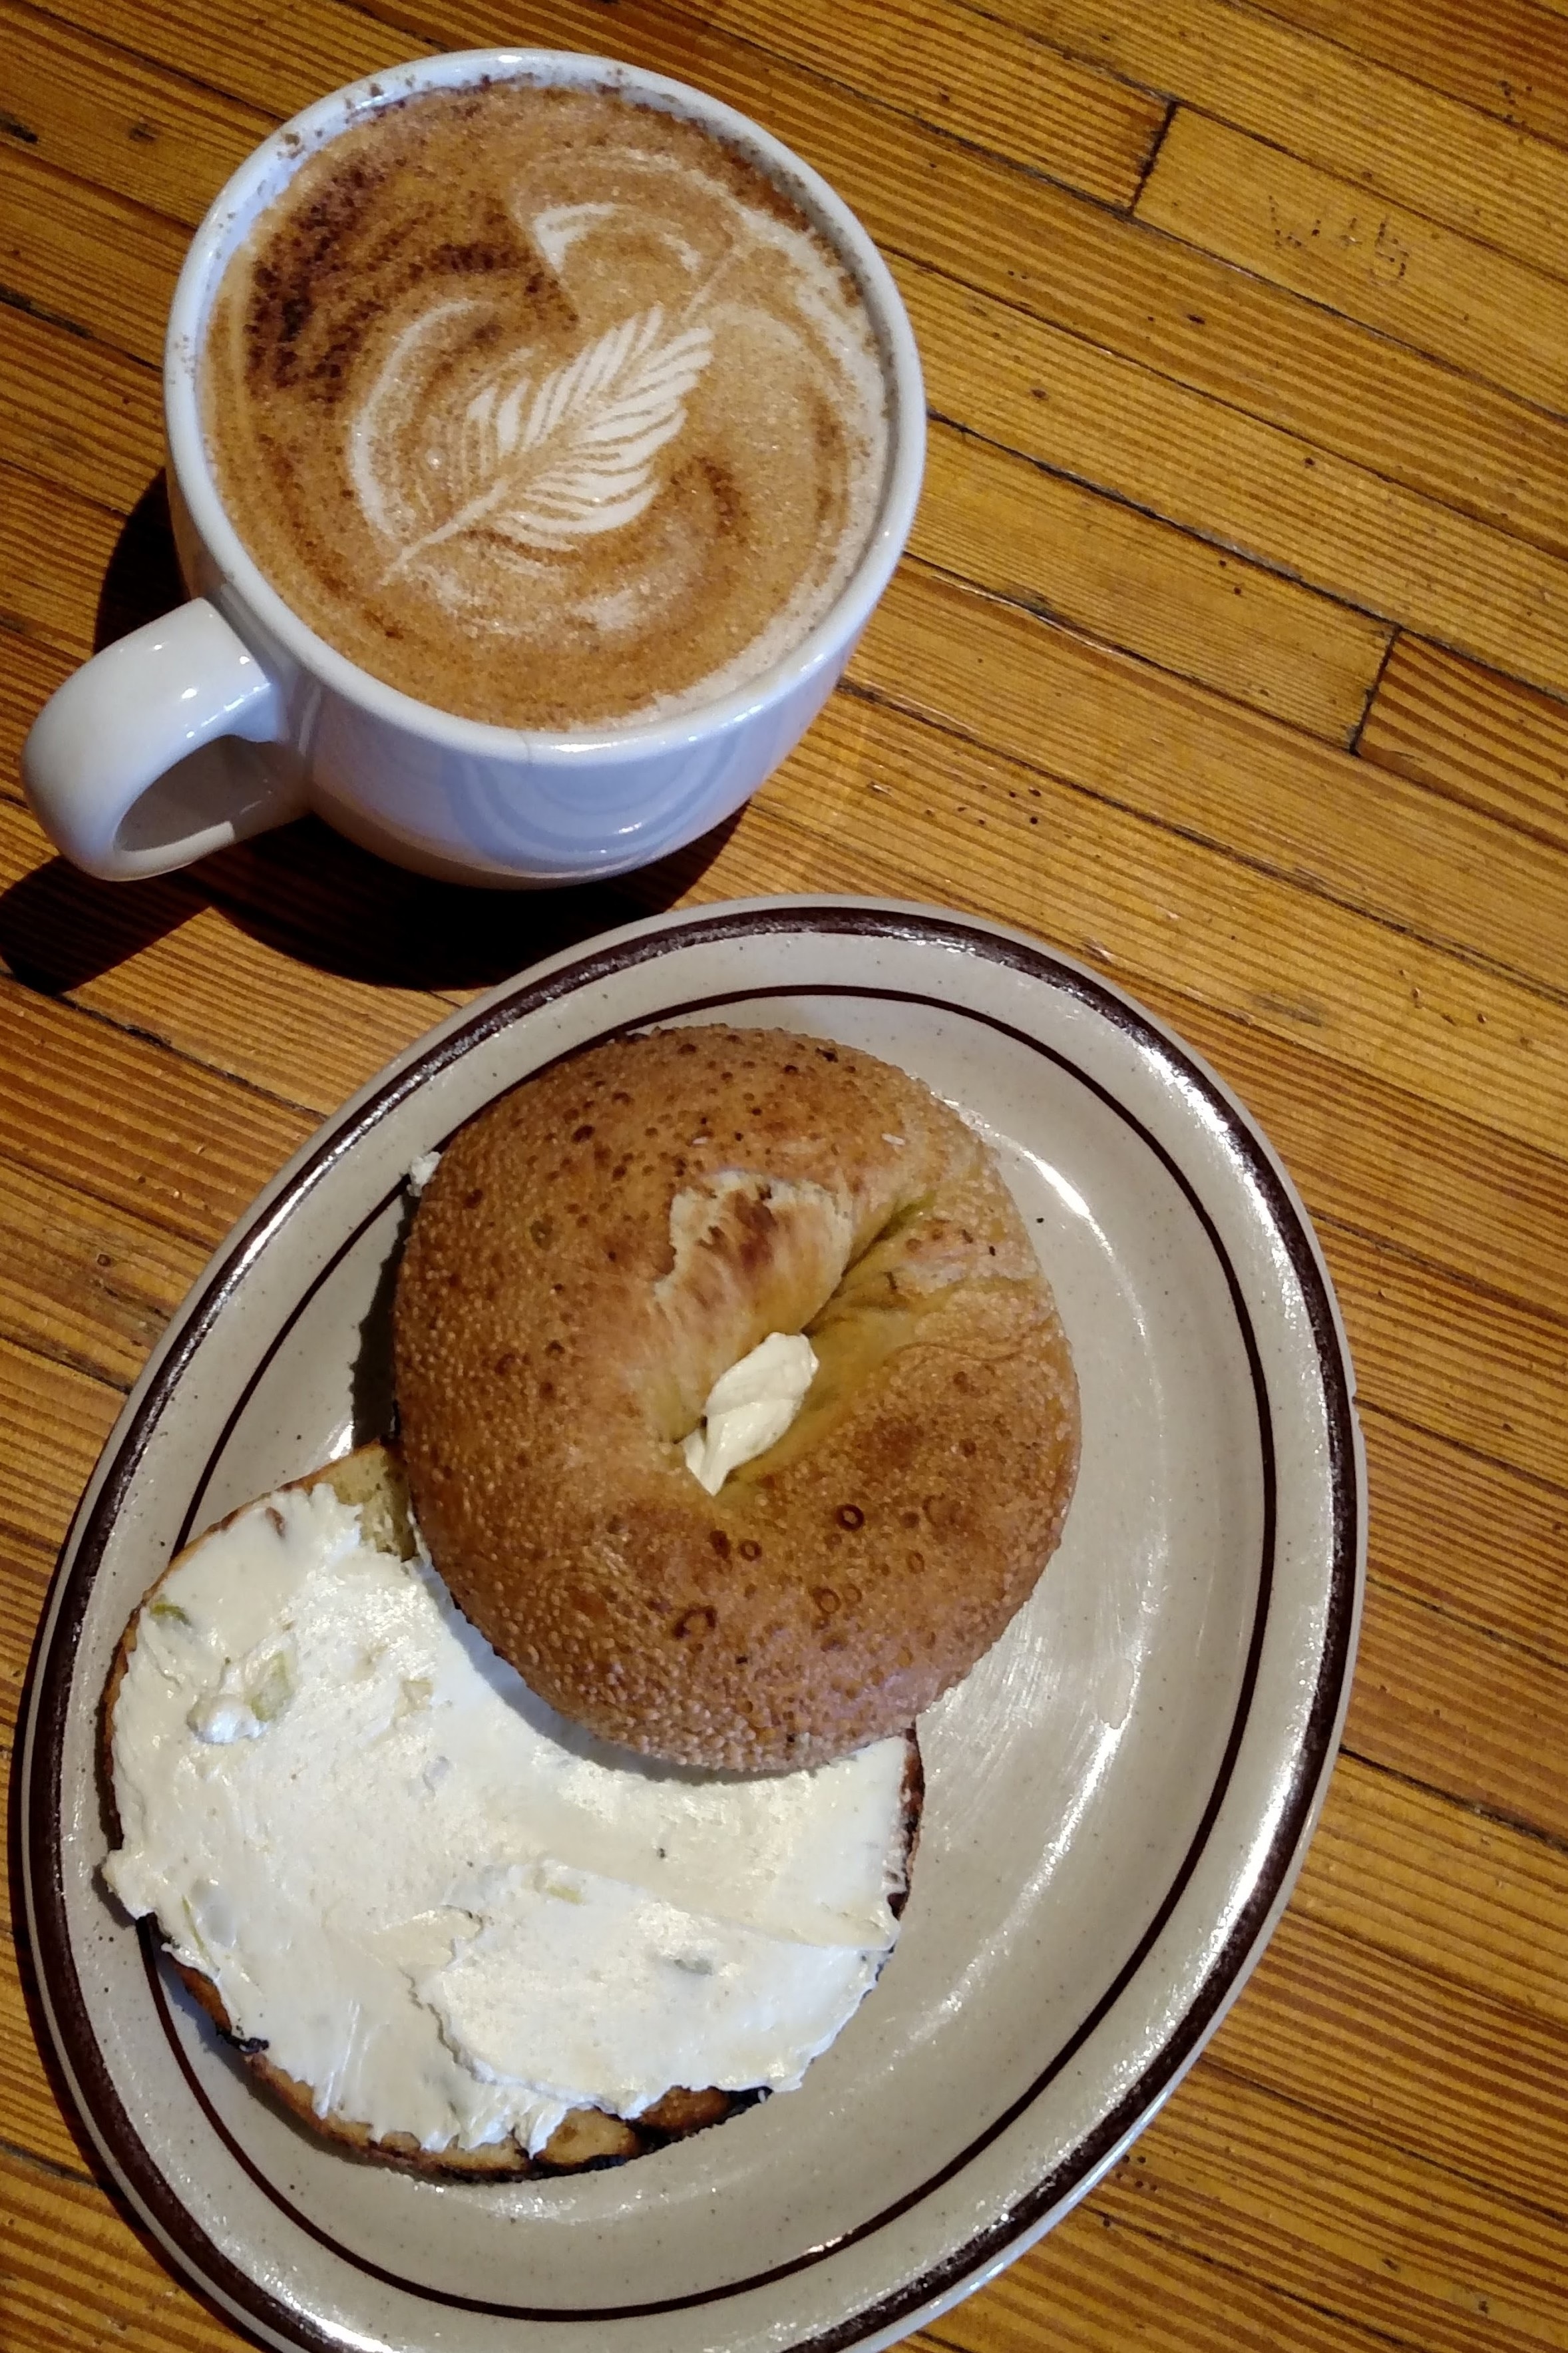 cappuccino and bread